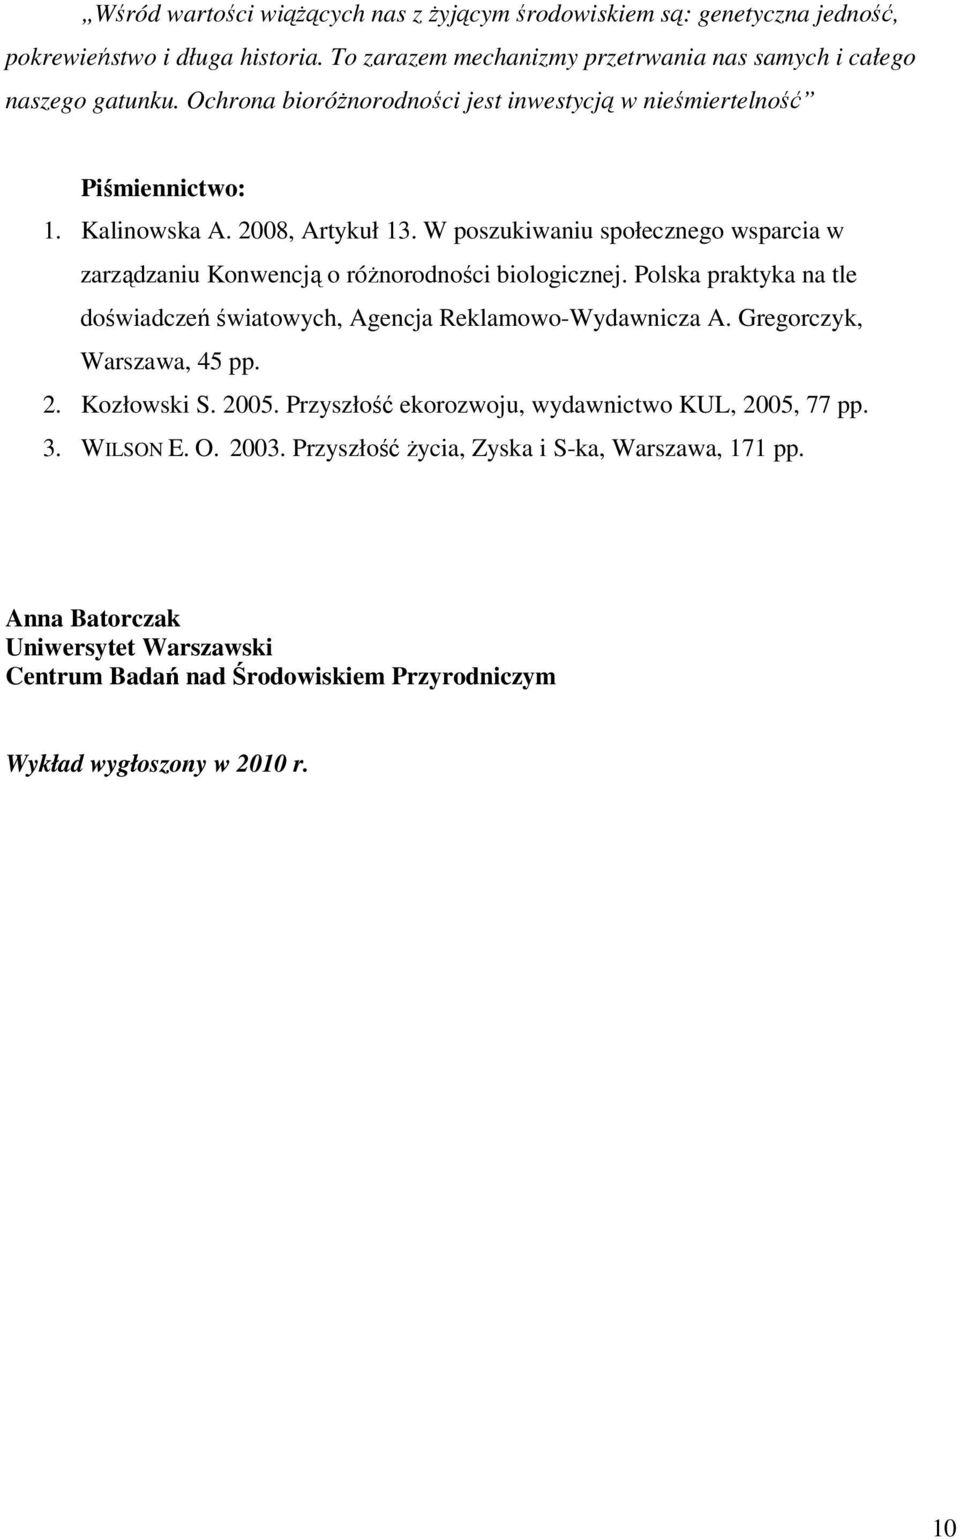 W poszukiwaniu społecznego wsparcia w zarządzaniu Konwencją o róŝnorodności biologicznej. Polska praktyka na tle doświadczeń światowych, Agencja Reklamowo-Wydawnicza A.